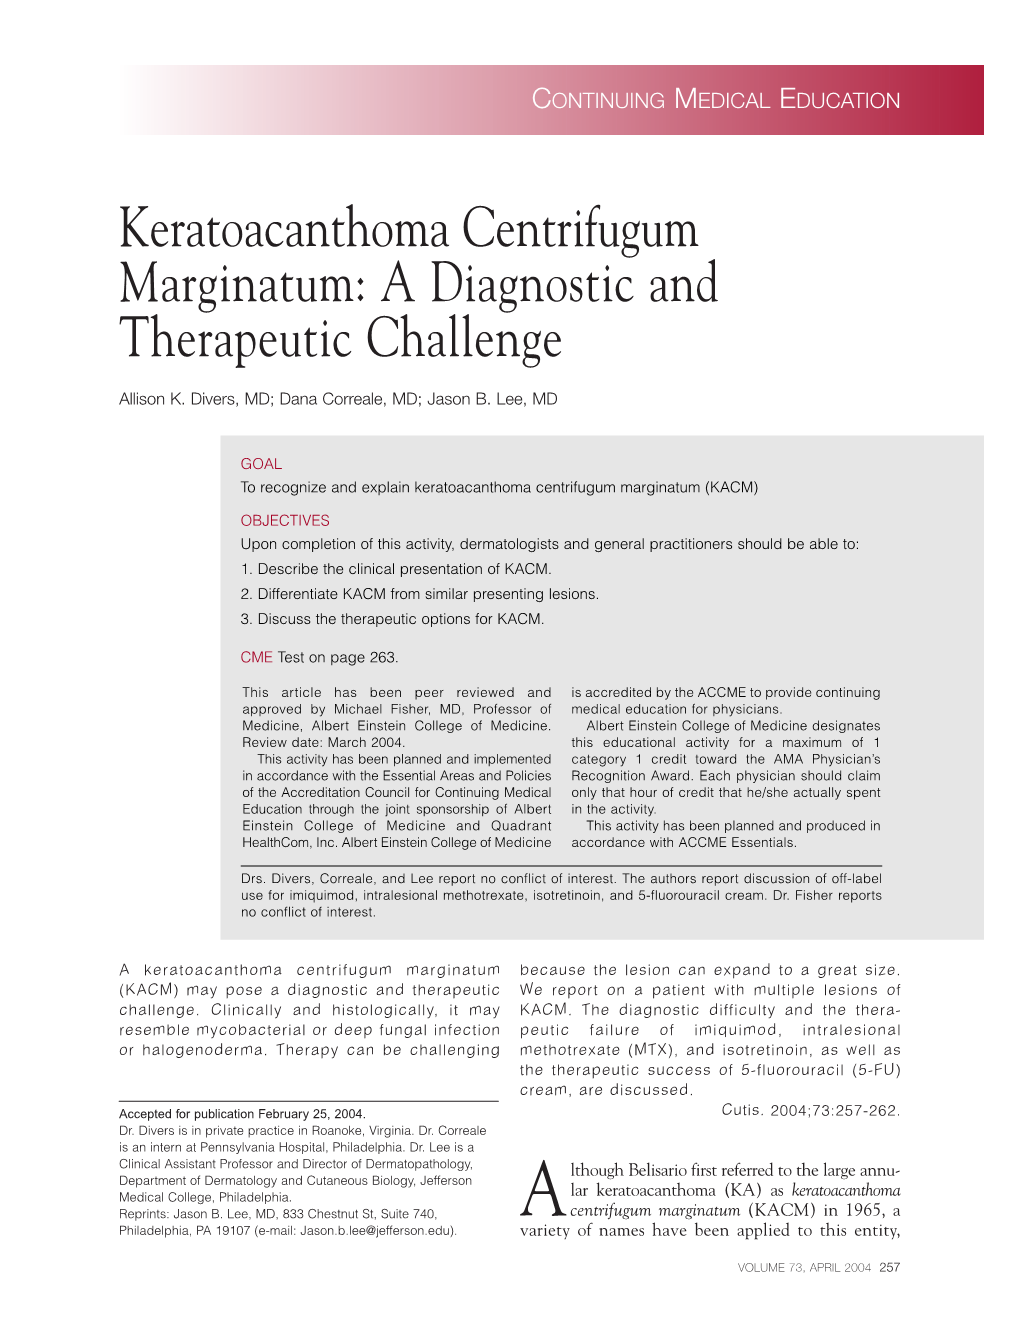 Keratoacanthoma Centrifugum Marginatum: a Diagnostic and Therapeutic Challenge